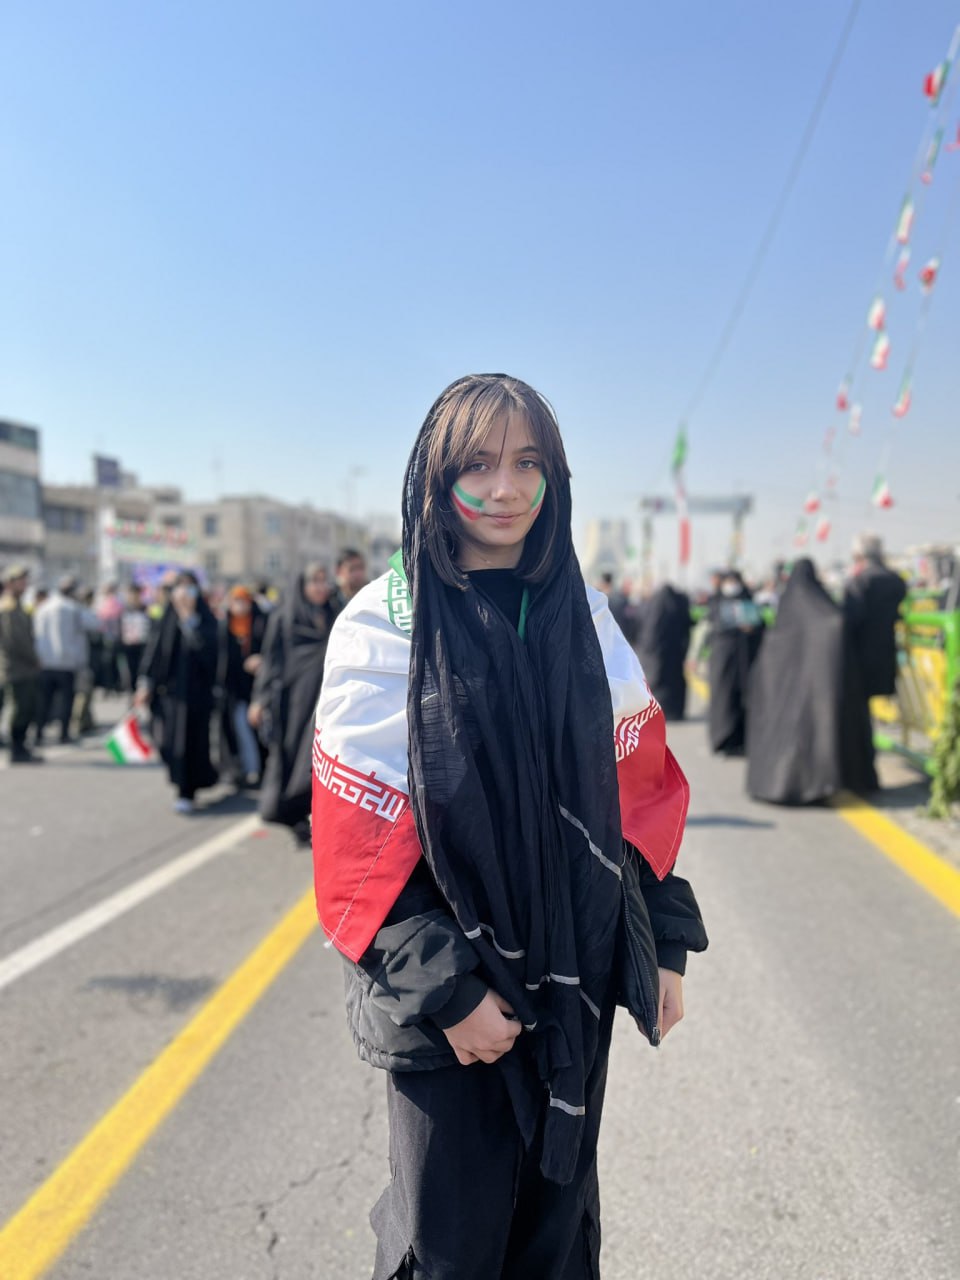 ظاهر متفاوت یک دختر جوان در راهپیمایی ۲۲ بهمن+عکس